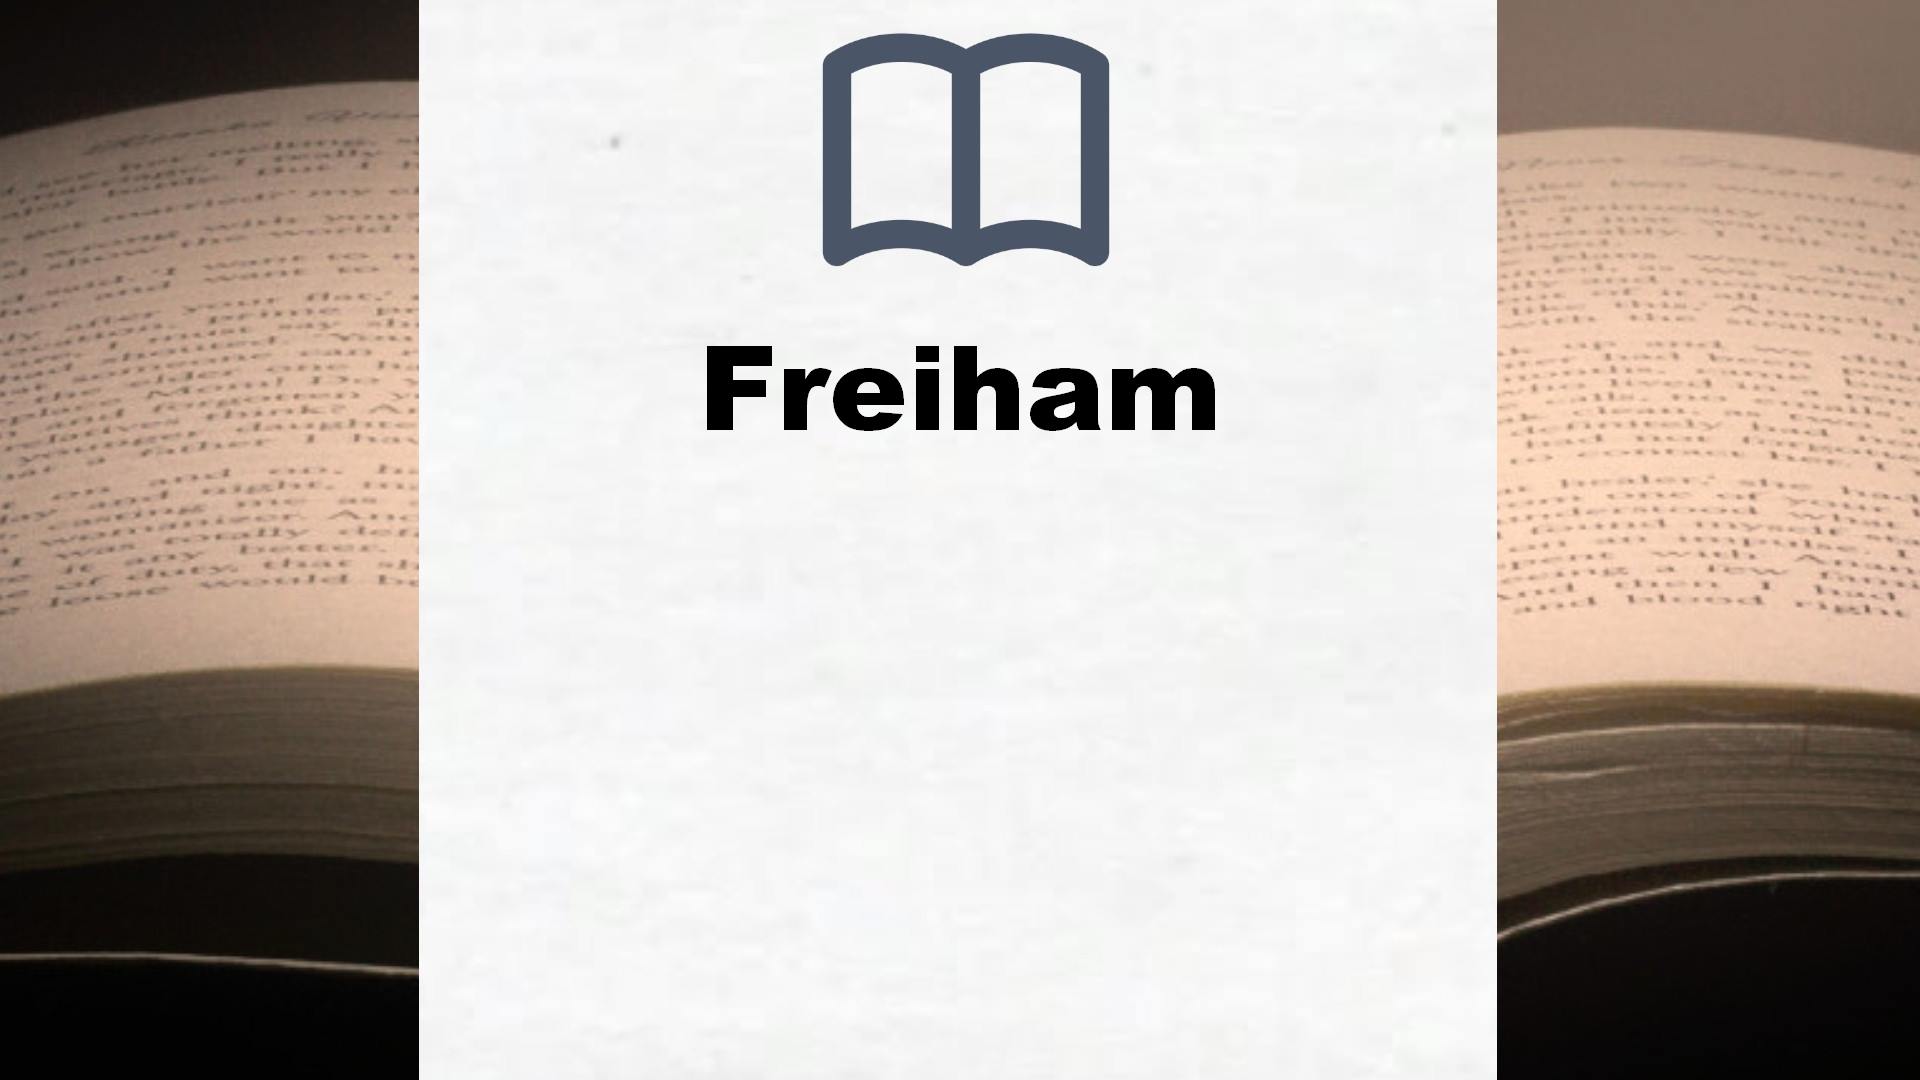 Bücher über Freiham